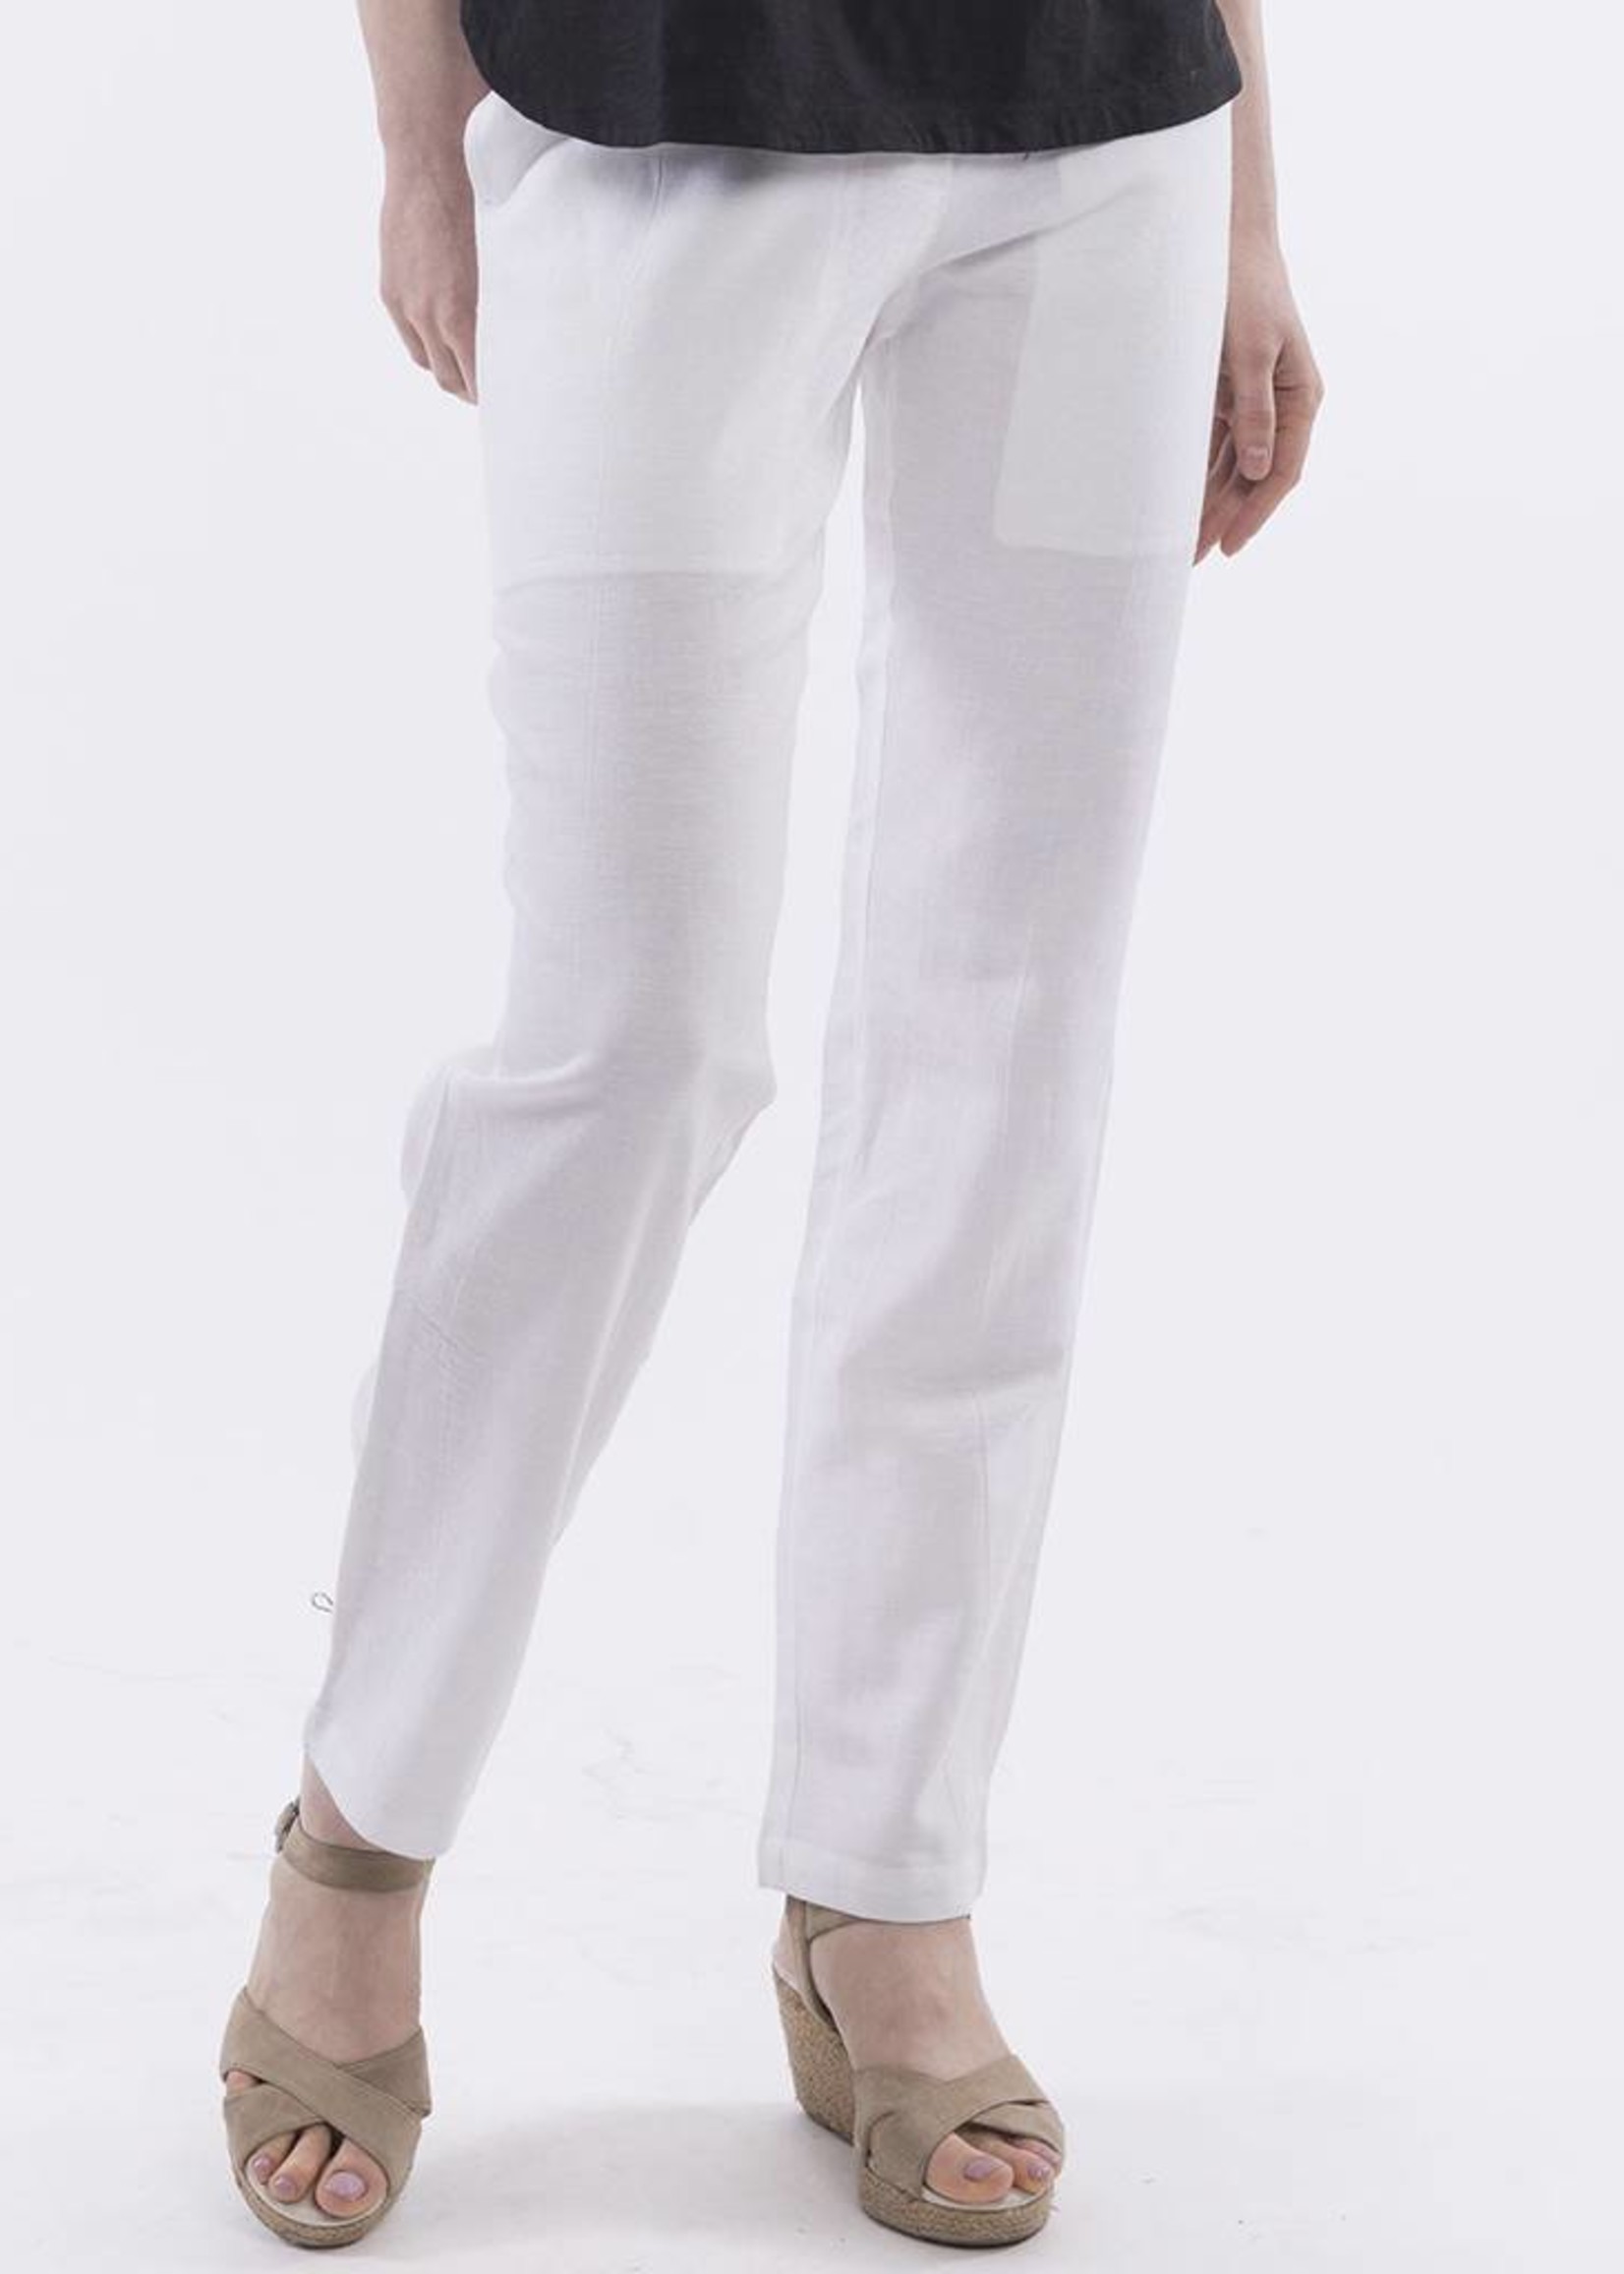 Orientique Linen Pants in White